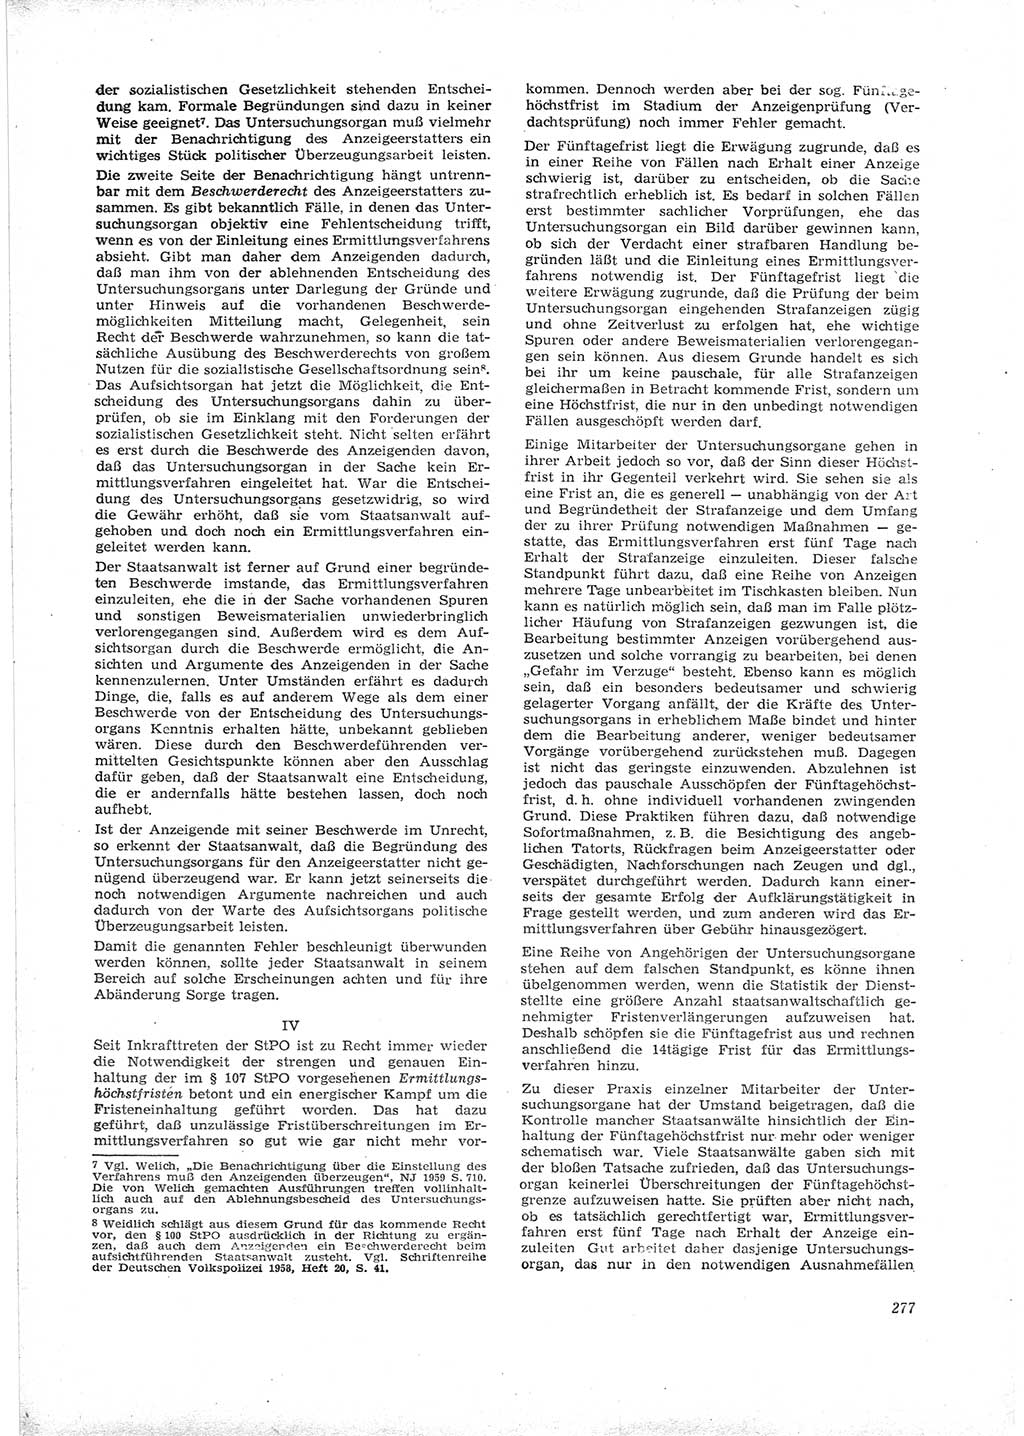 Neue Justiz (NJ), Zeitschrift für Recht und Rechtswissenschaft [Deutsche Demokratische Republik (DDR)], 16. Jahrgang 1962, Seite 277 (NJ DDR 1962, S. 277)